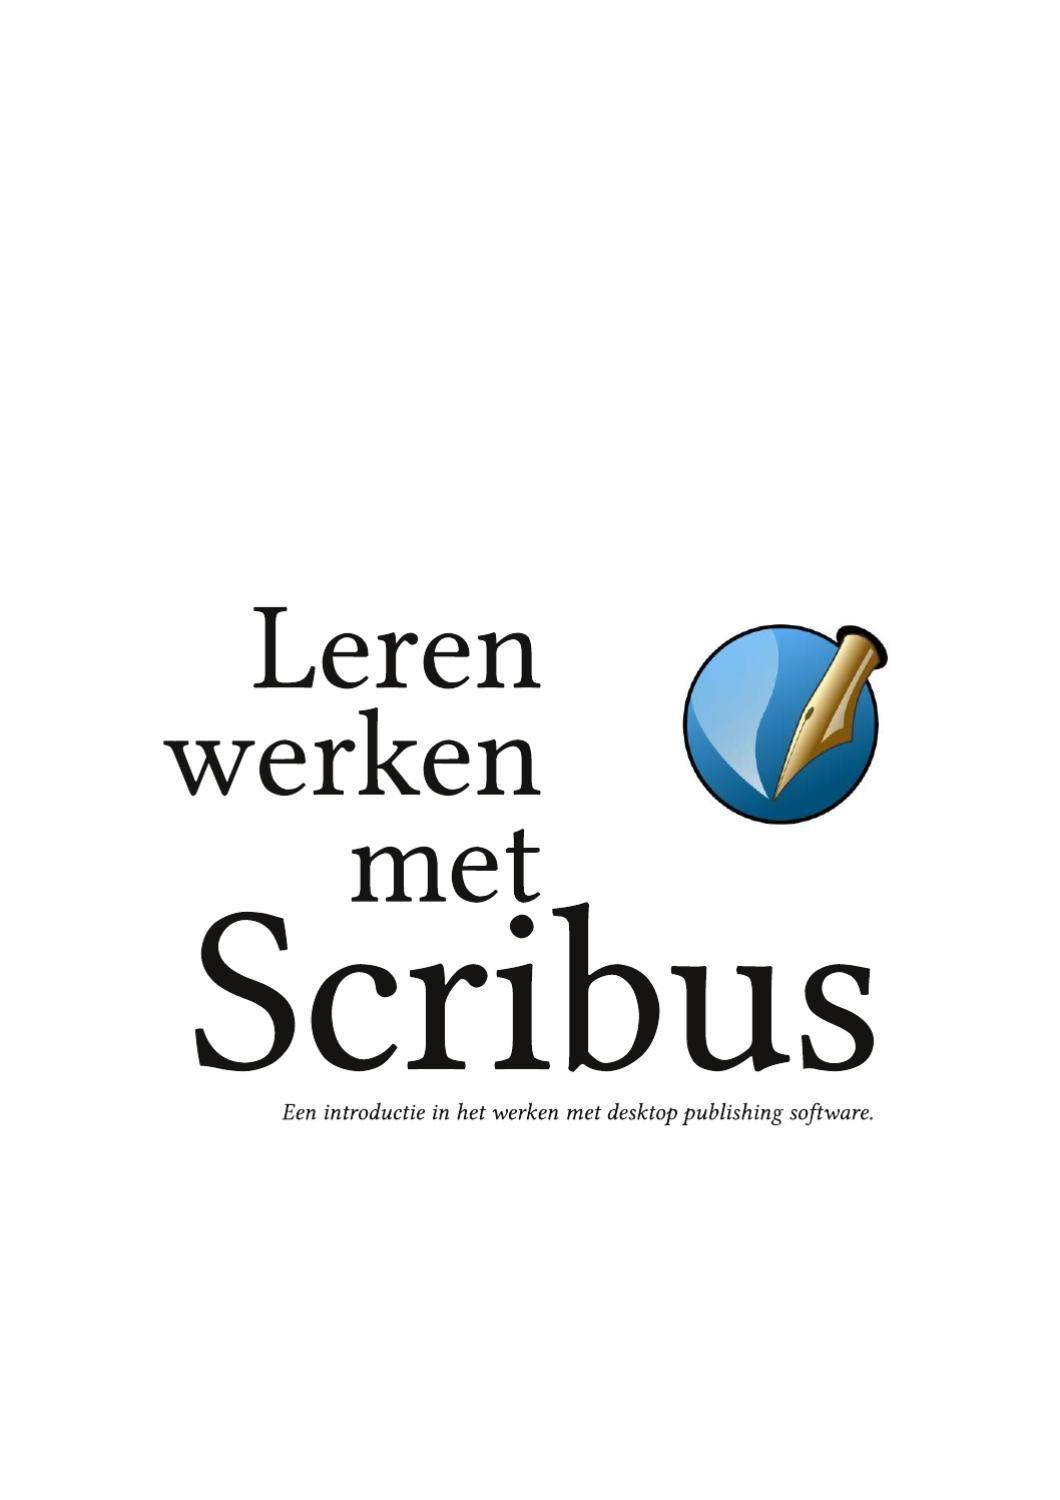 Scribus Logo - Leren werken met Scribus